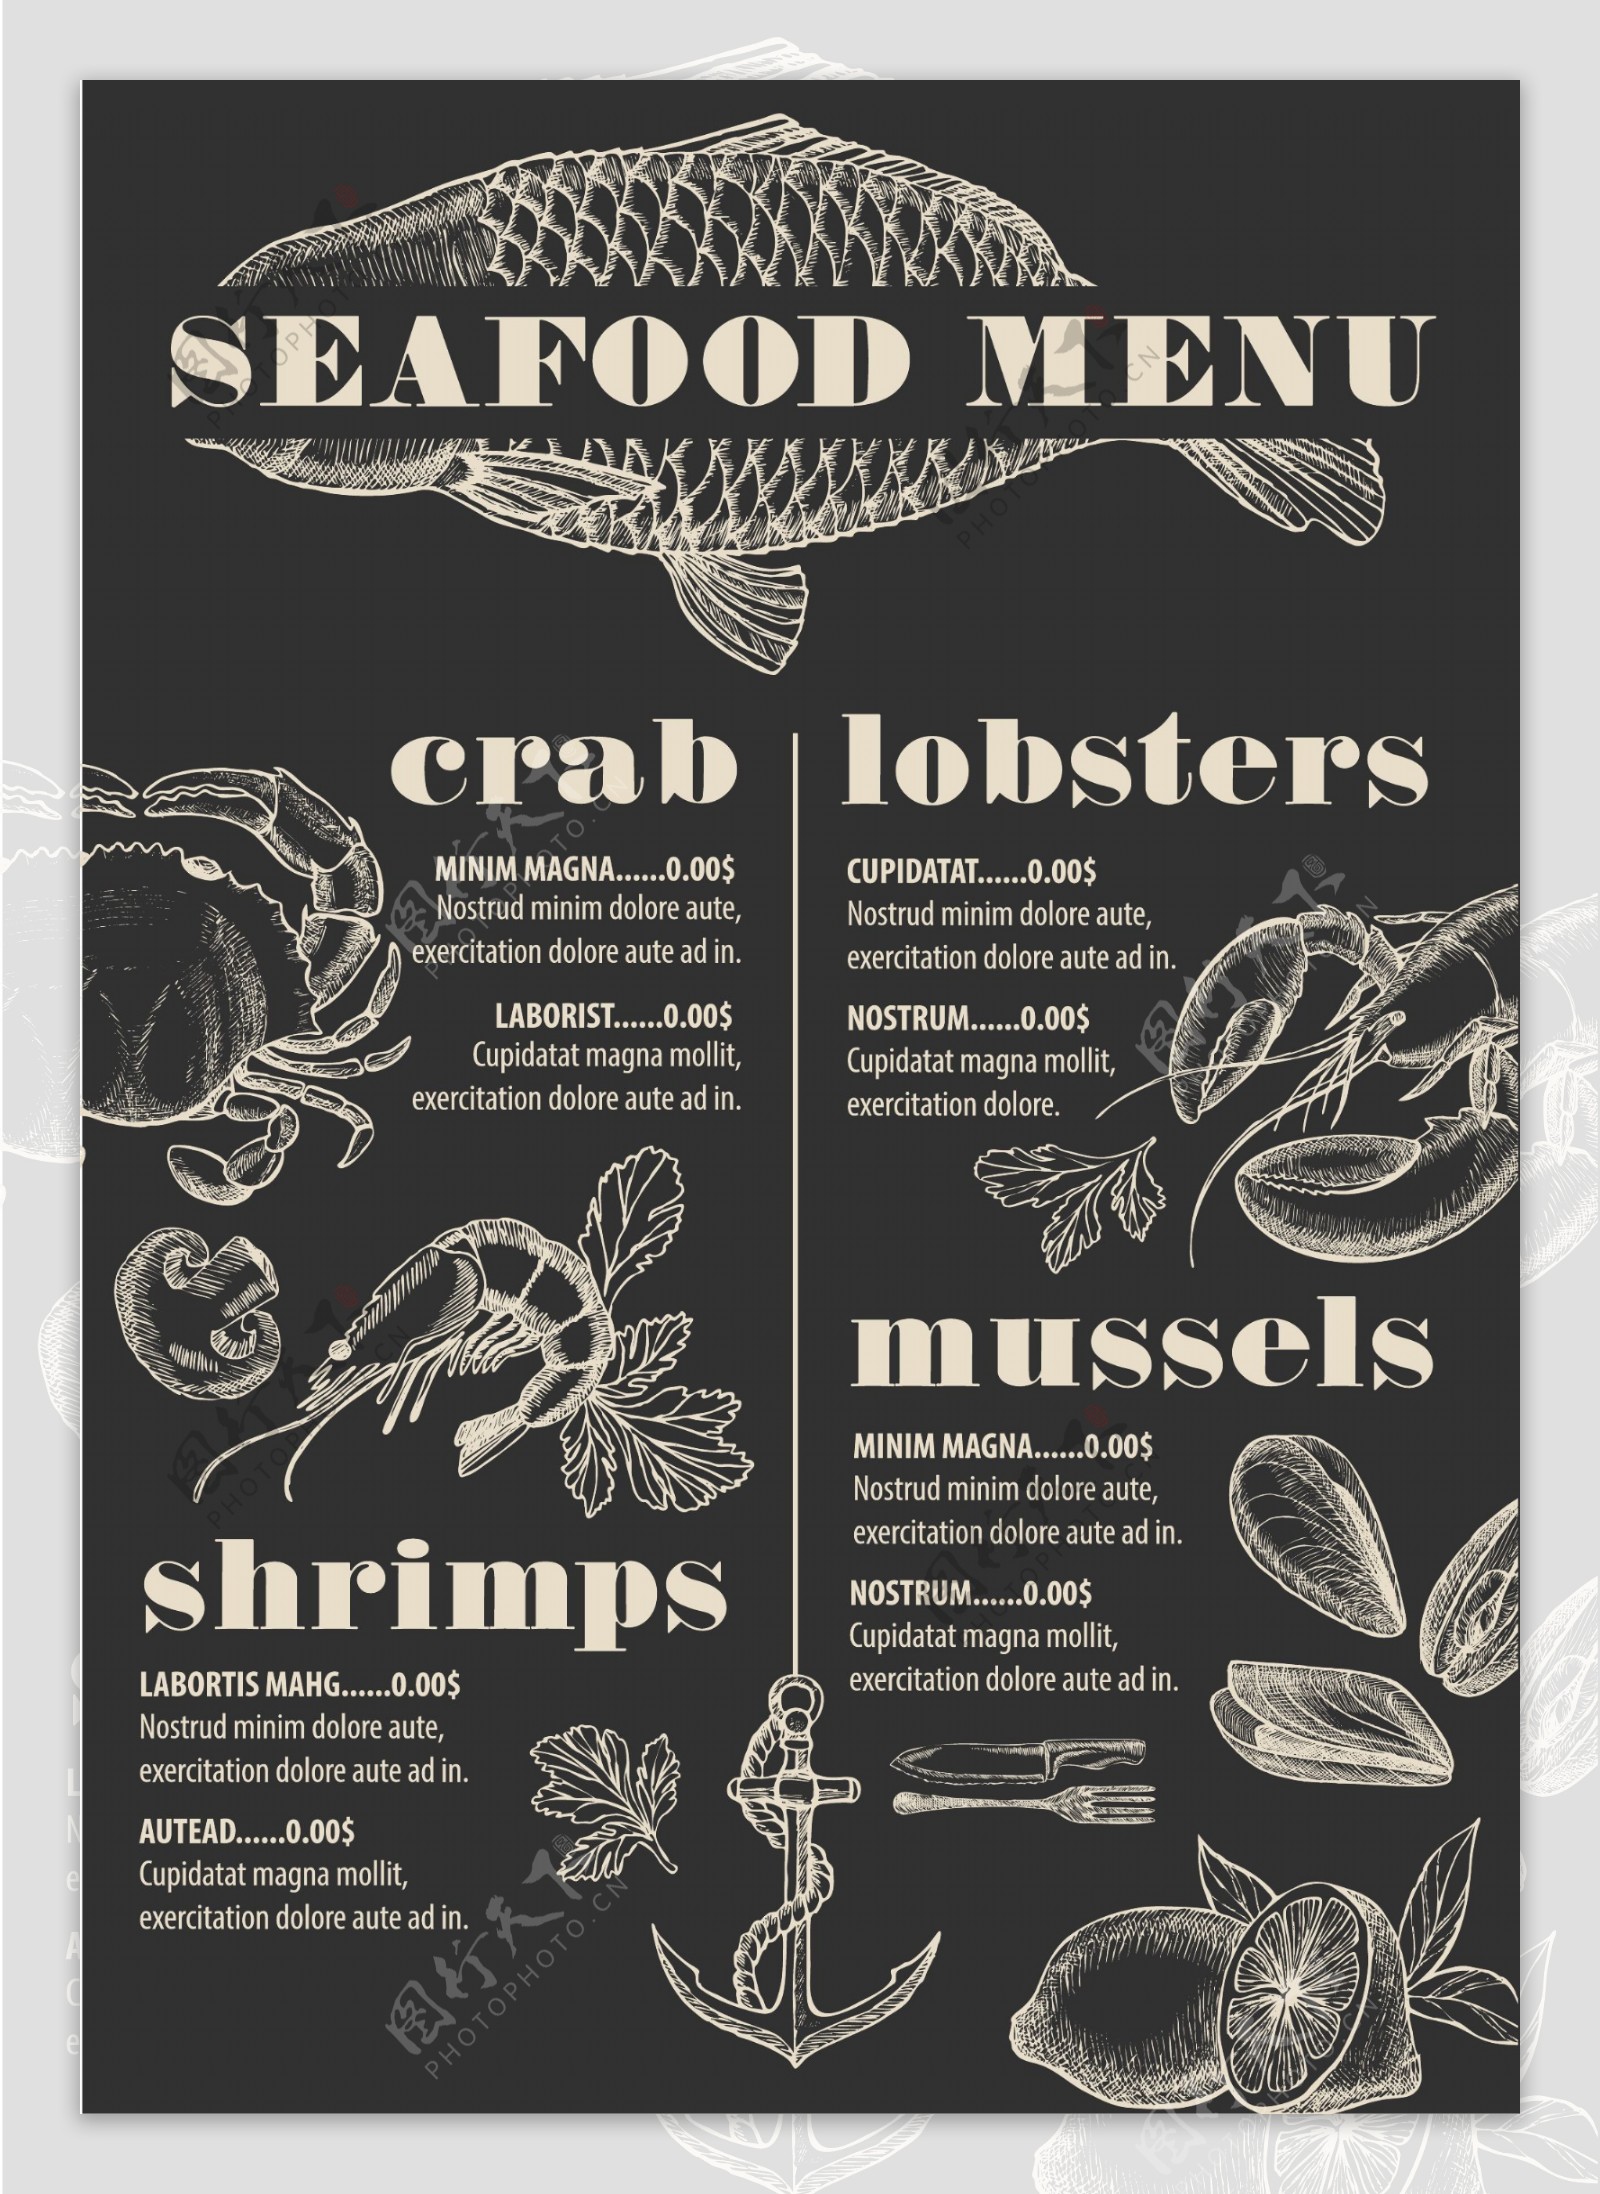 海鲜手绘风格厨房食物清单矢量素材